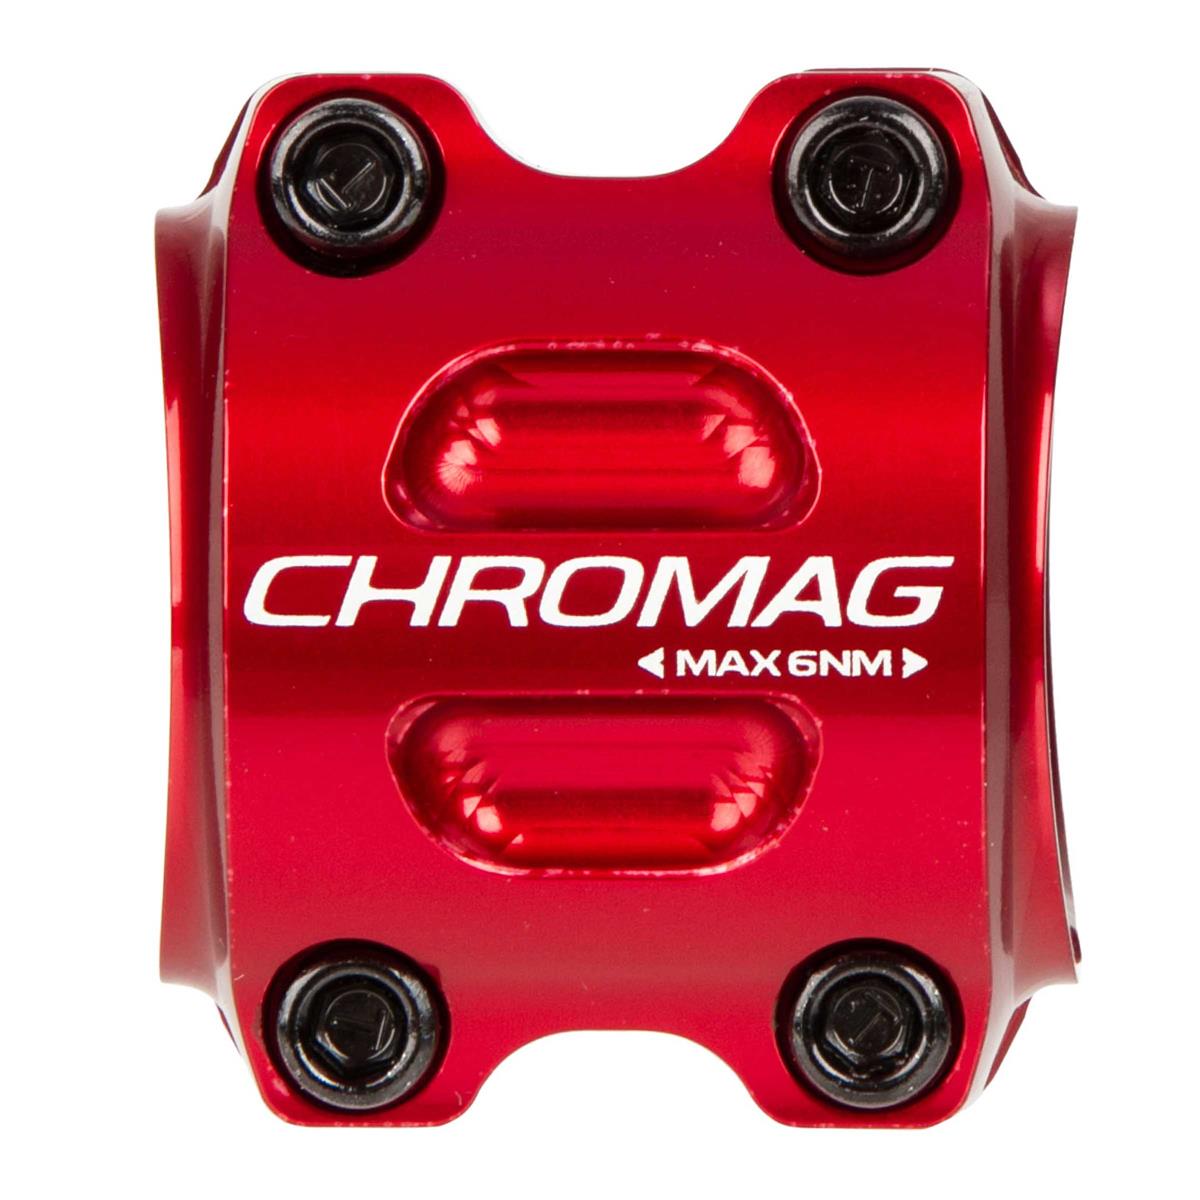 Chromag MTB Stem Ranger V2 31.8 mm, 40 mm Reach, Red